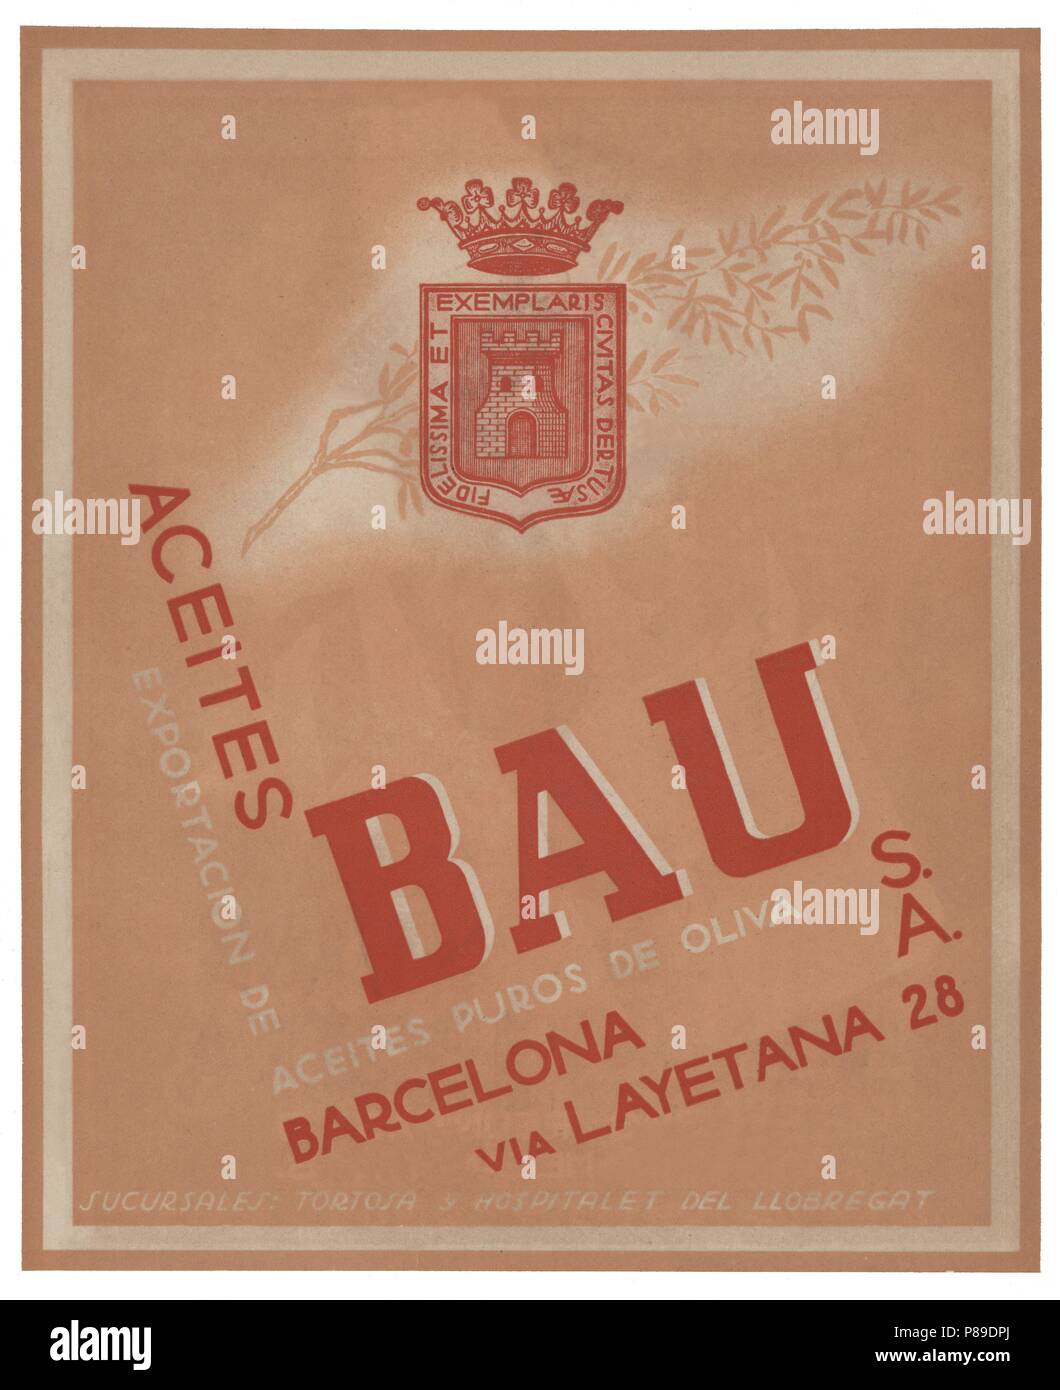 Publicidad. Aceites Bau, S.A., de Barcelona. Año 1940. Stockfoto